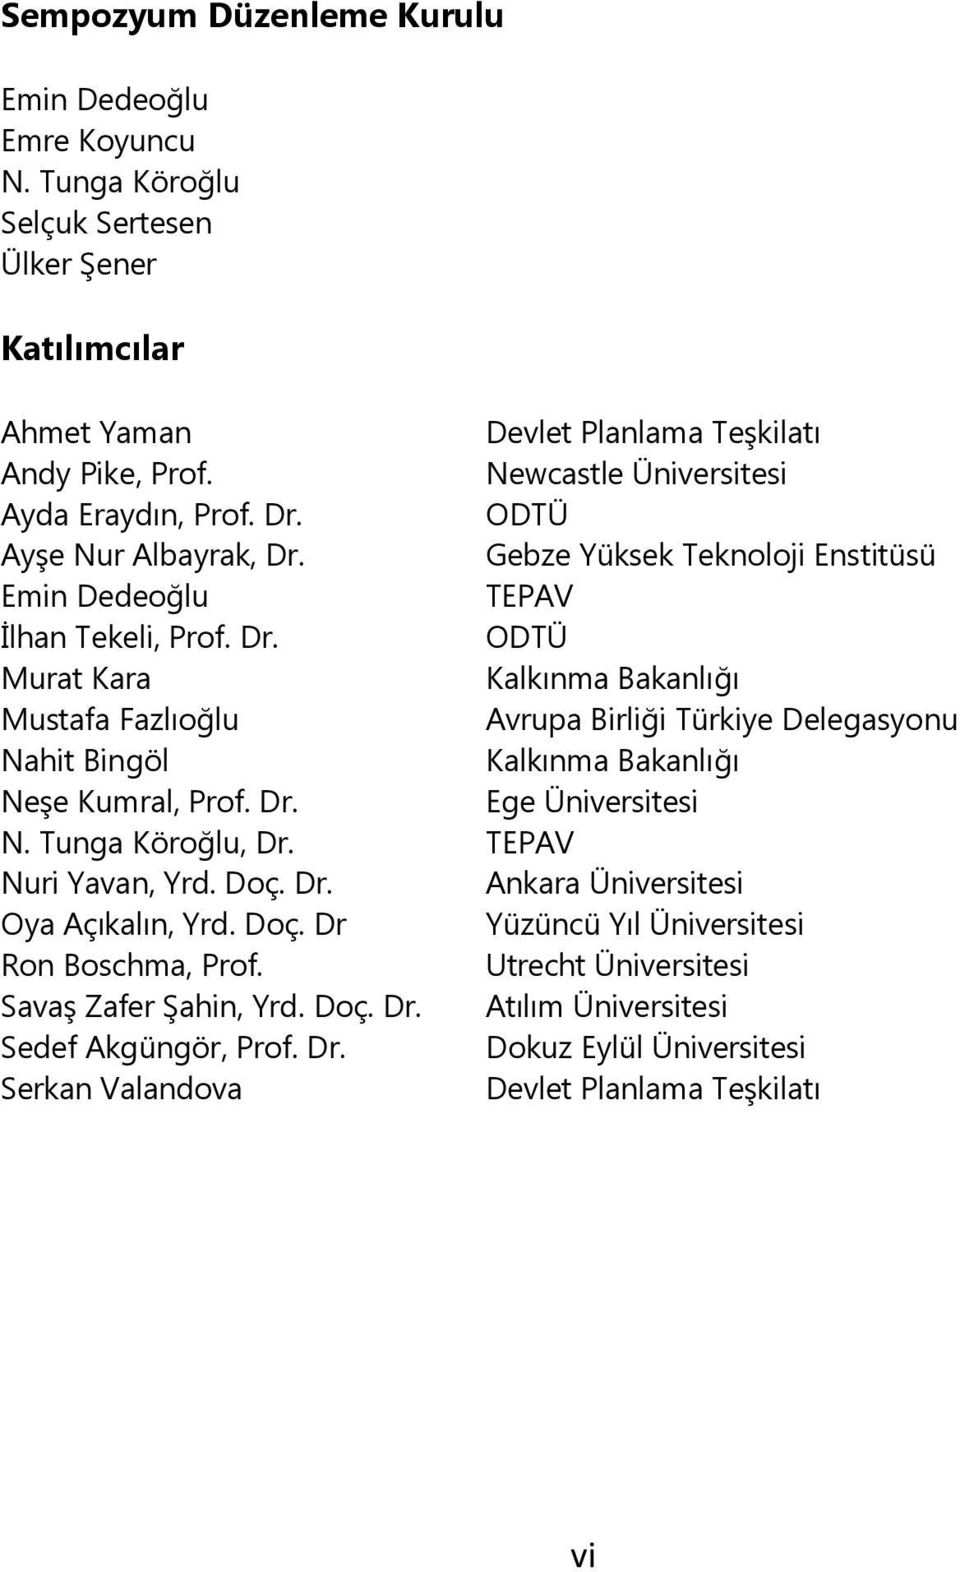 Dr. Ege Üniversitesi N. Tunga Köroğlu, Dr. TEPAV Nuri Yavan, Yrd. Doç. Dr. Ankara Üniversitesi Oya Açıkalın, Yrd. Doç. Dr Yüzüncü Yıl Üniversitesi Ron Boschma, Prof.